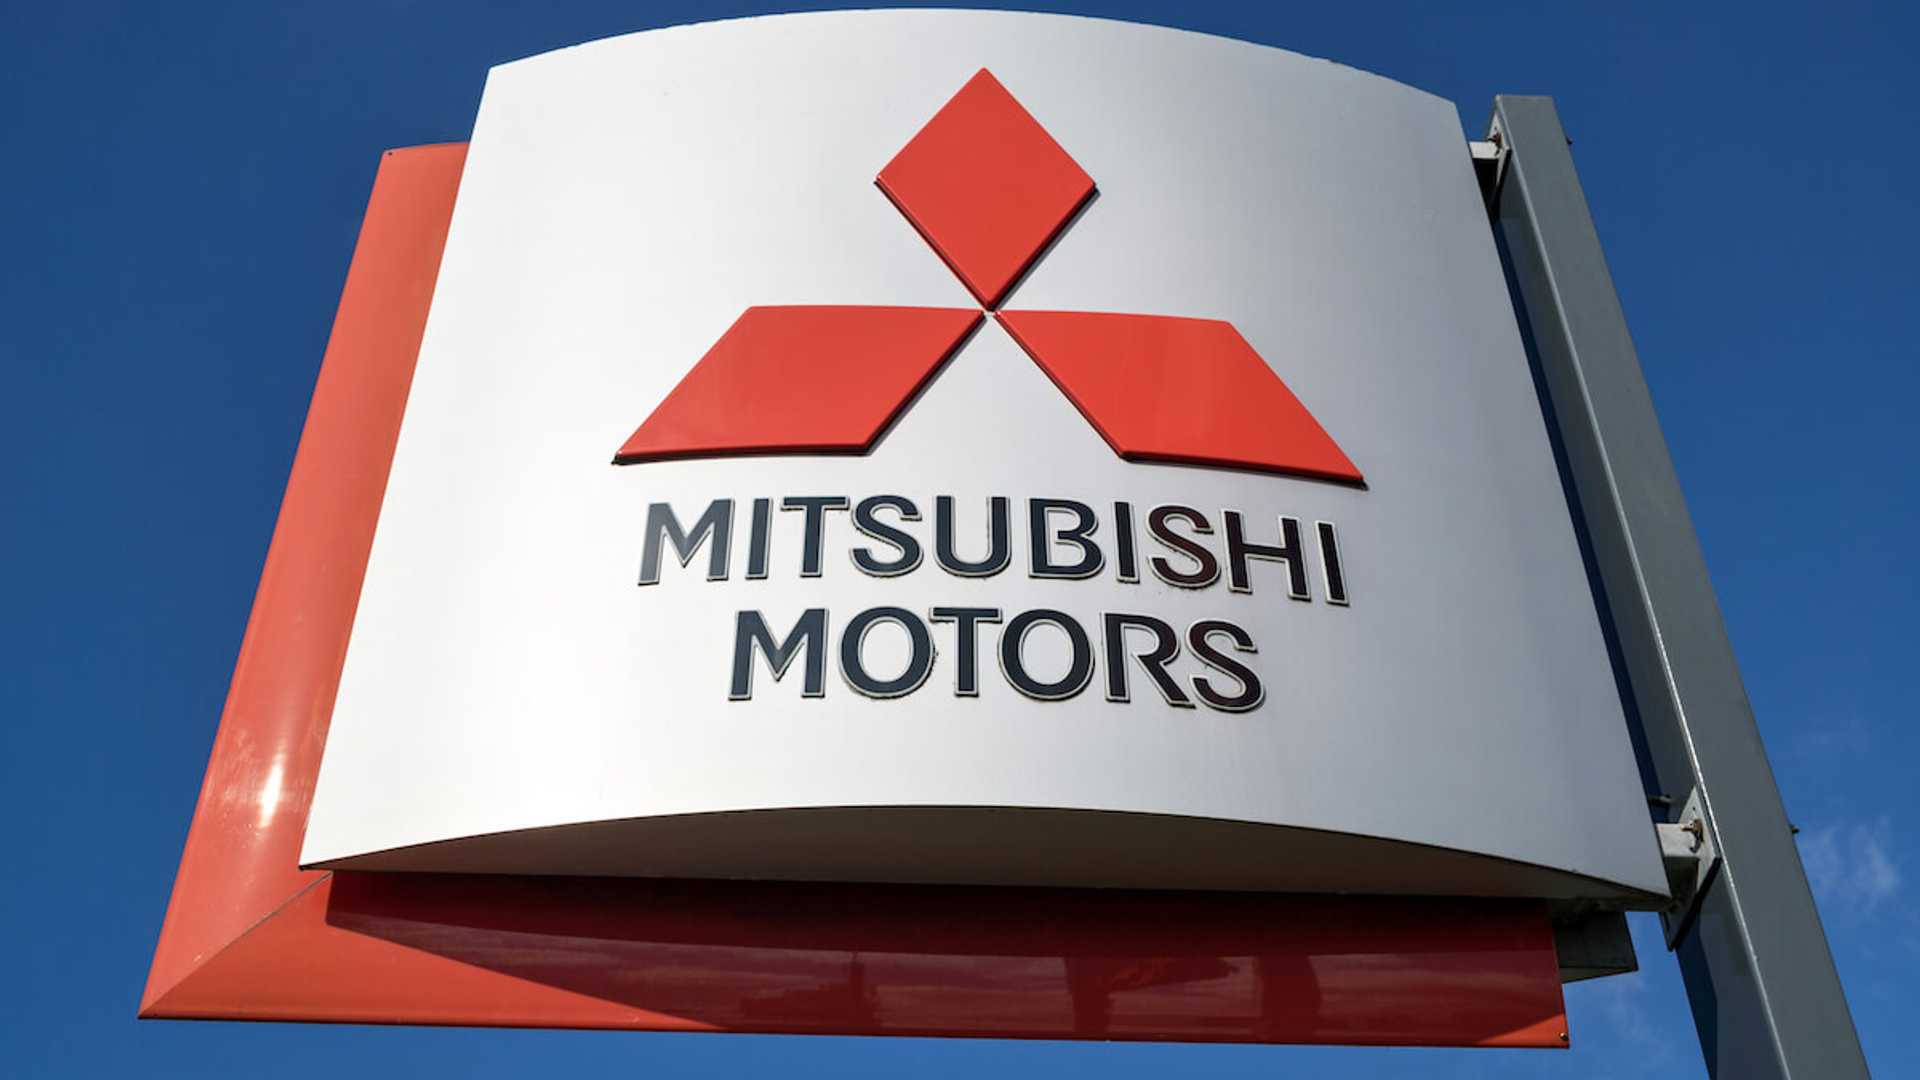 Mitsubishi - logo